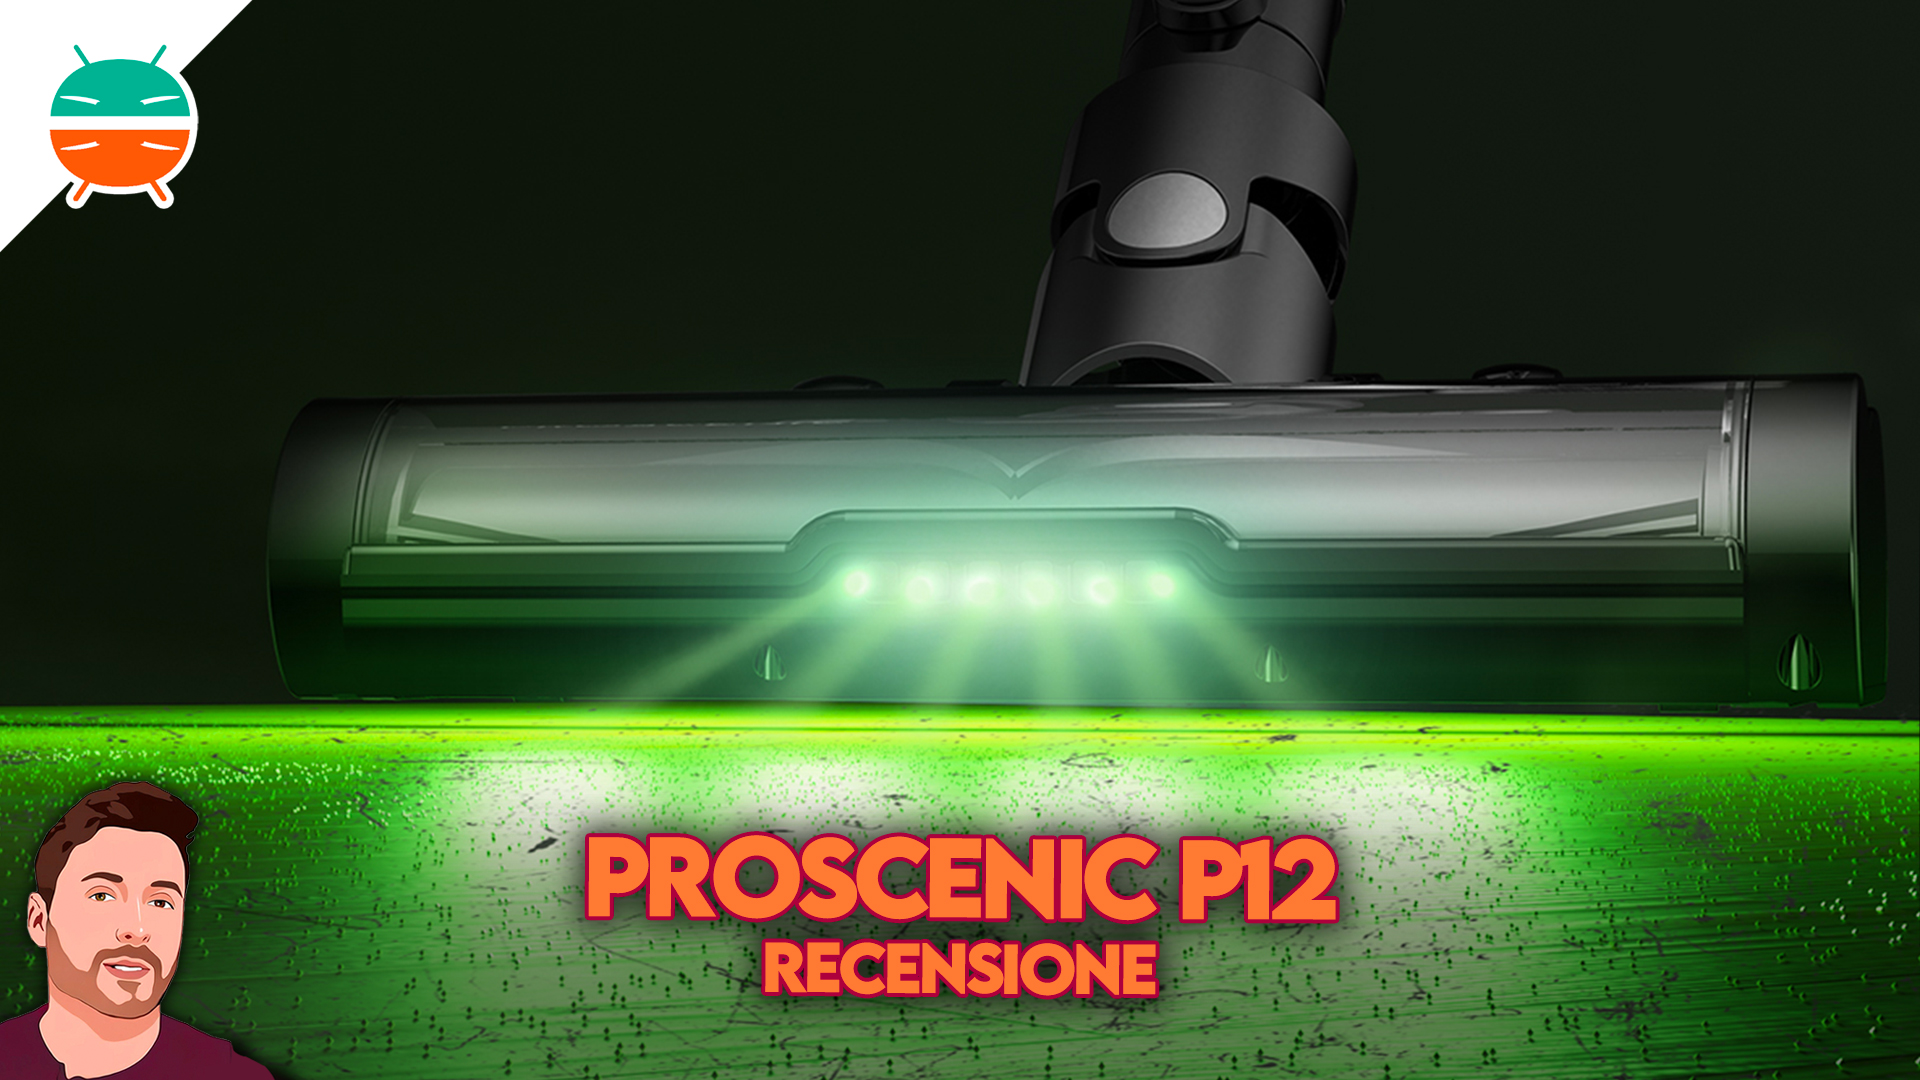 Proscenic P12, ¿Lo recomendamos?